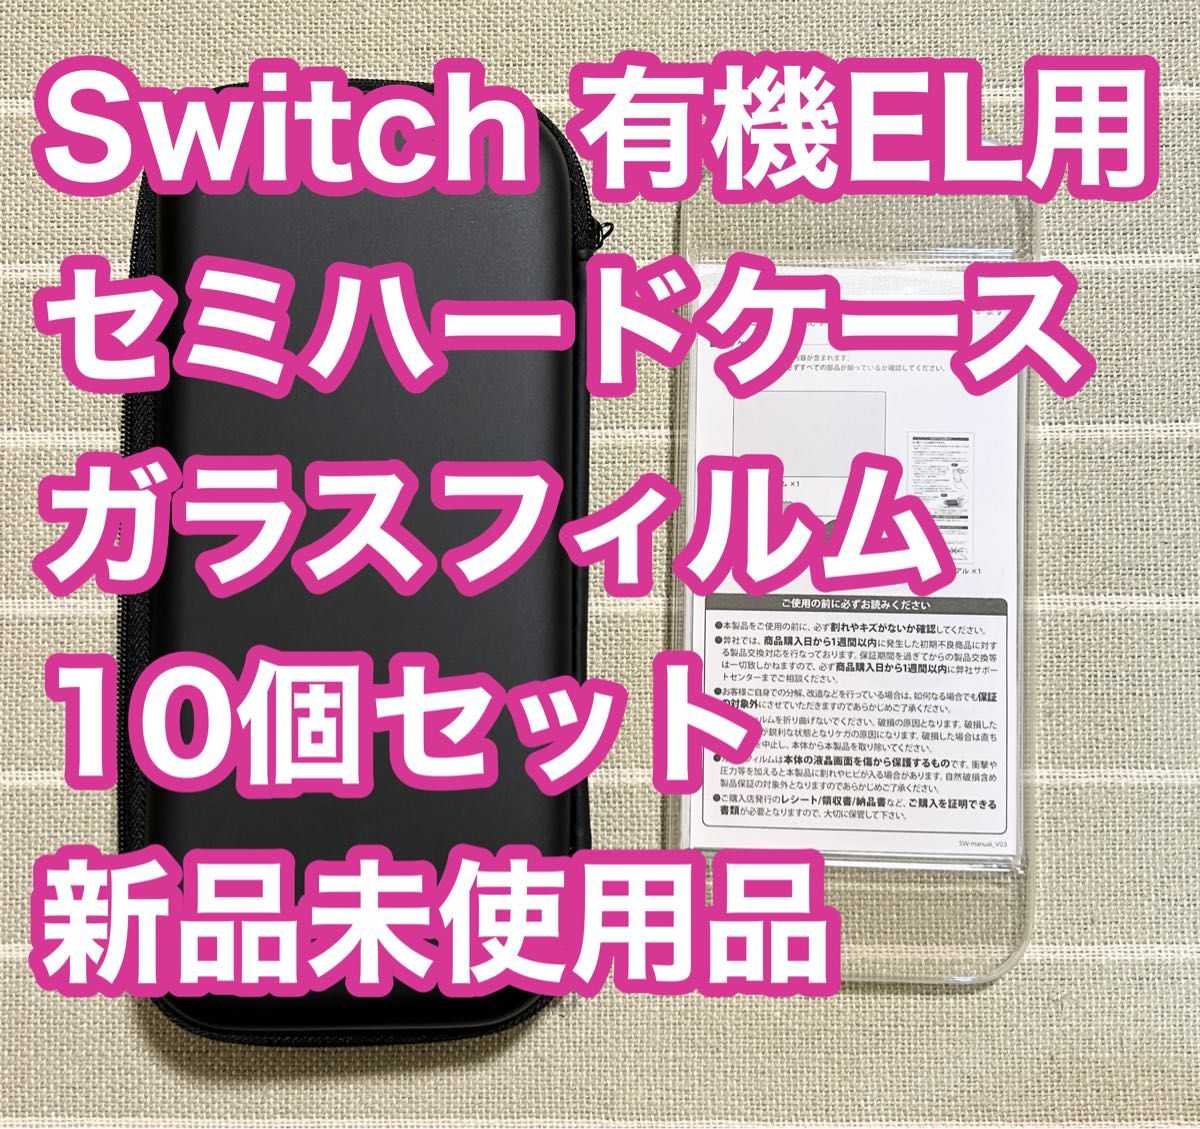 Switch 有機EL スターティングセット ガラス セミハードケース 新品 未使用品 スイッチ 任天堂